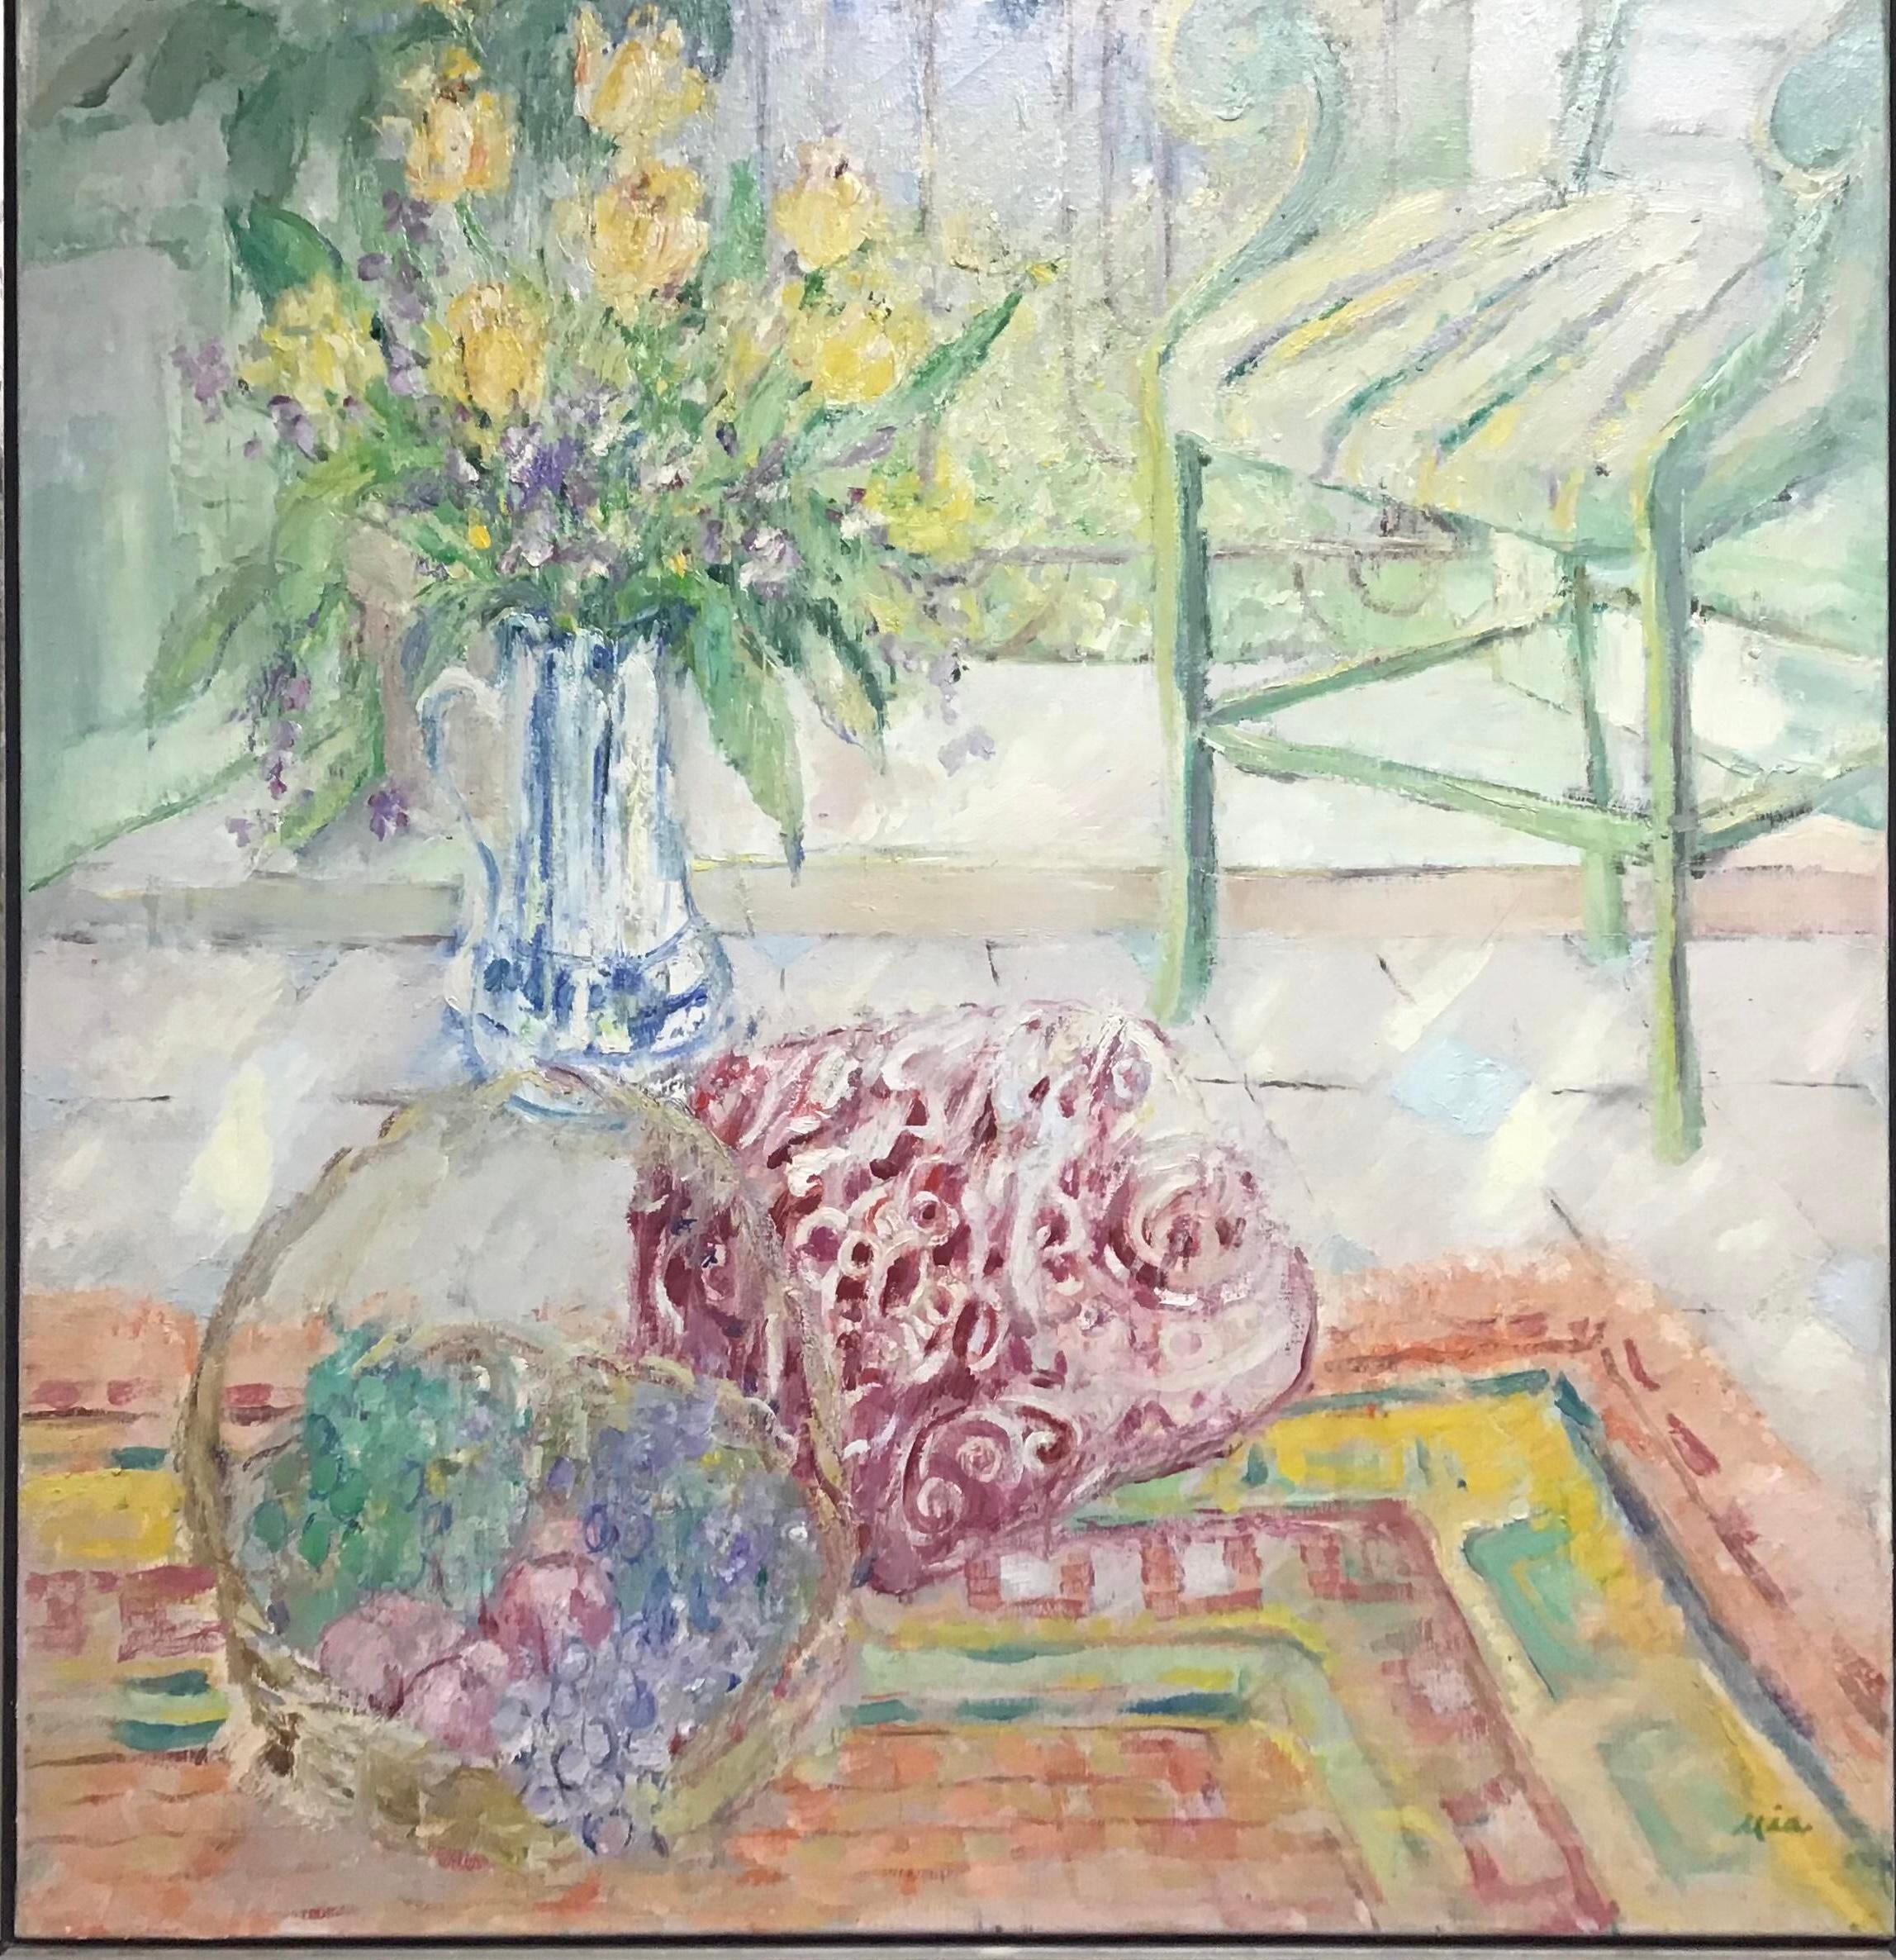 Belle et grande peinture originale à l'huile sur toile représentant un vase de fleurs posé sur une table devant une fenêtre à côté d'une chaise. Style impressionniste avec de lourds empâtements de peinture dans un style coloré. Il est présenté dans